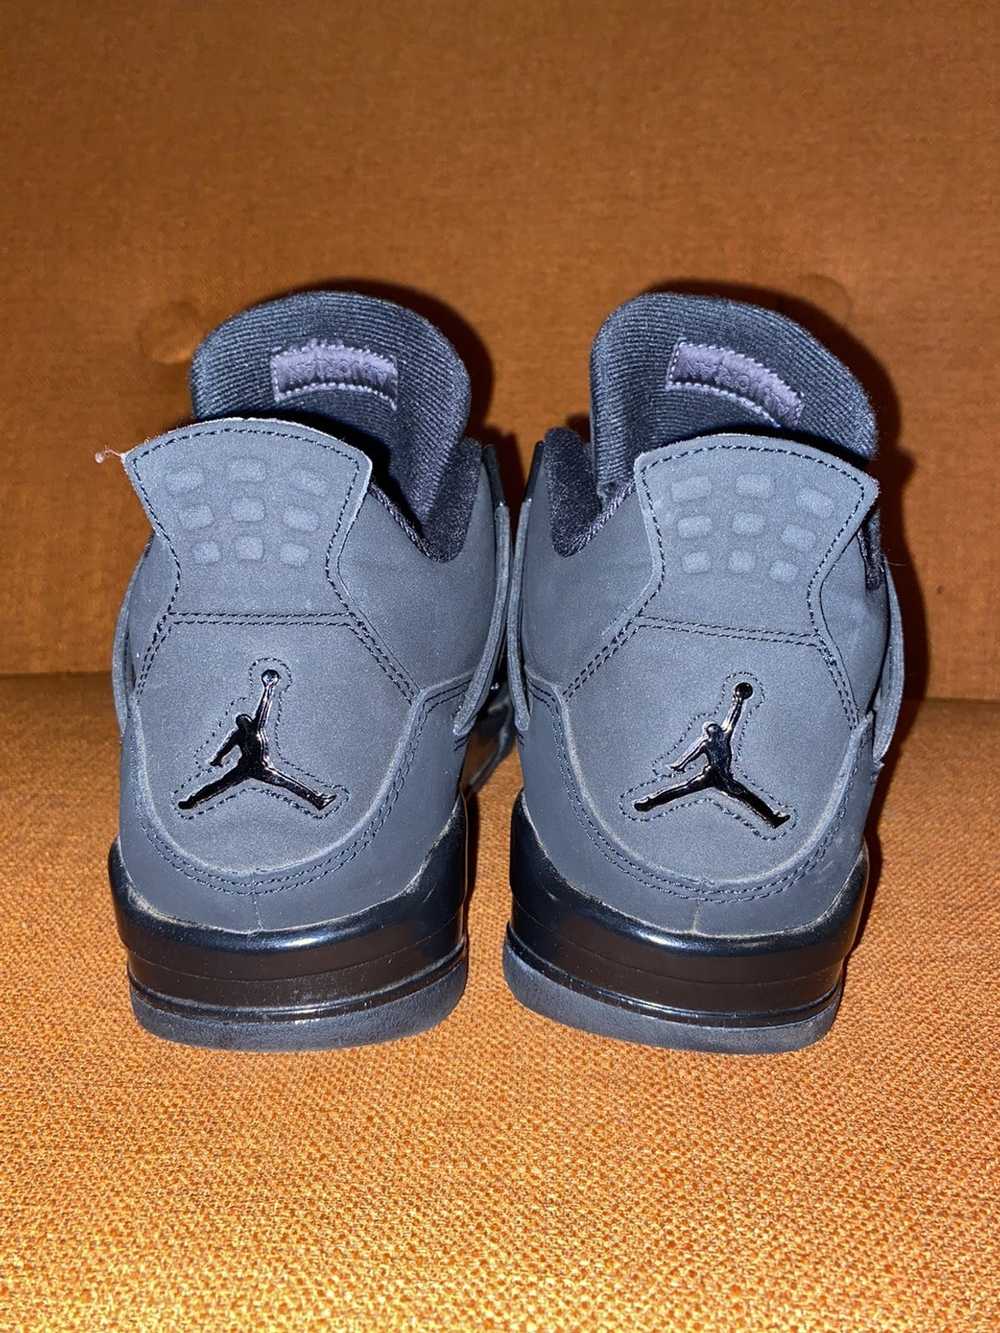 Jordan Brand All black Jordan 4’s - image 2